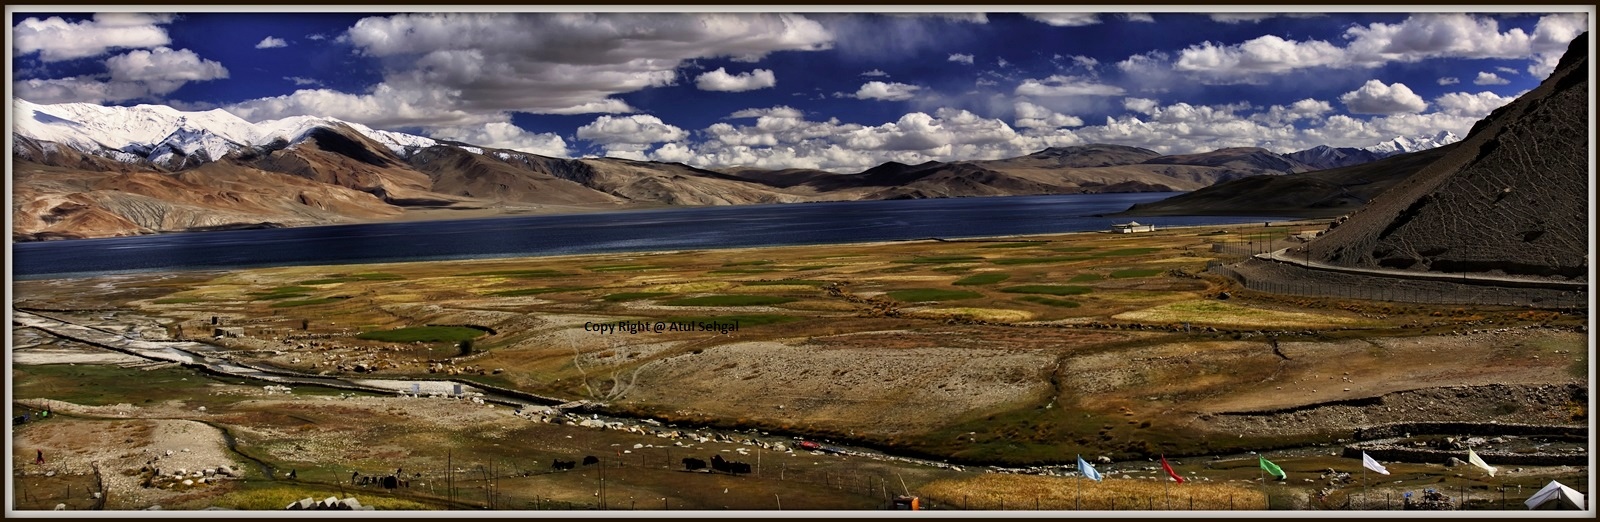 Tso Moriri Wetland reserve....Changthang ladakh...